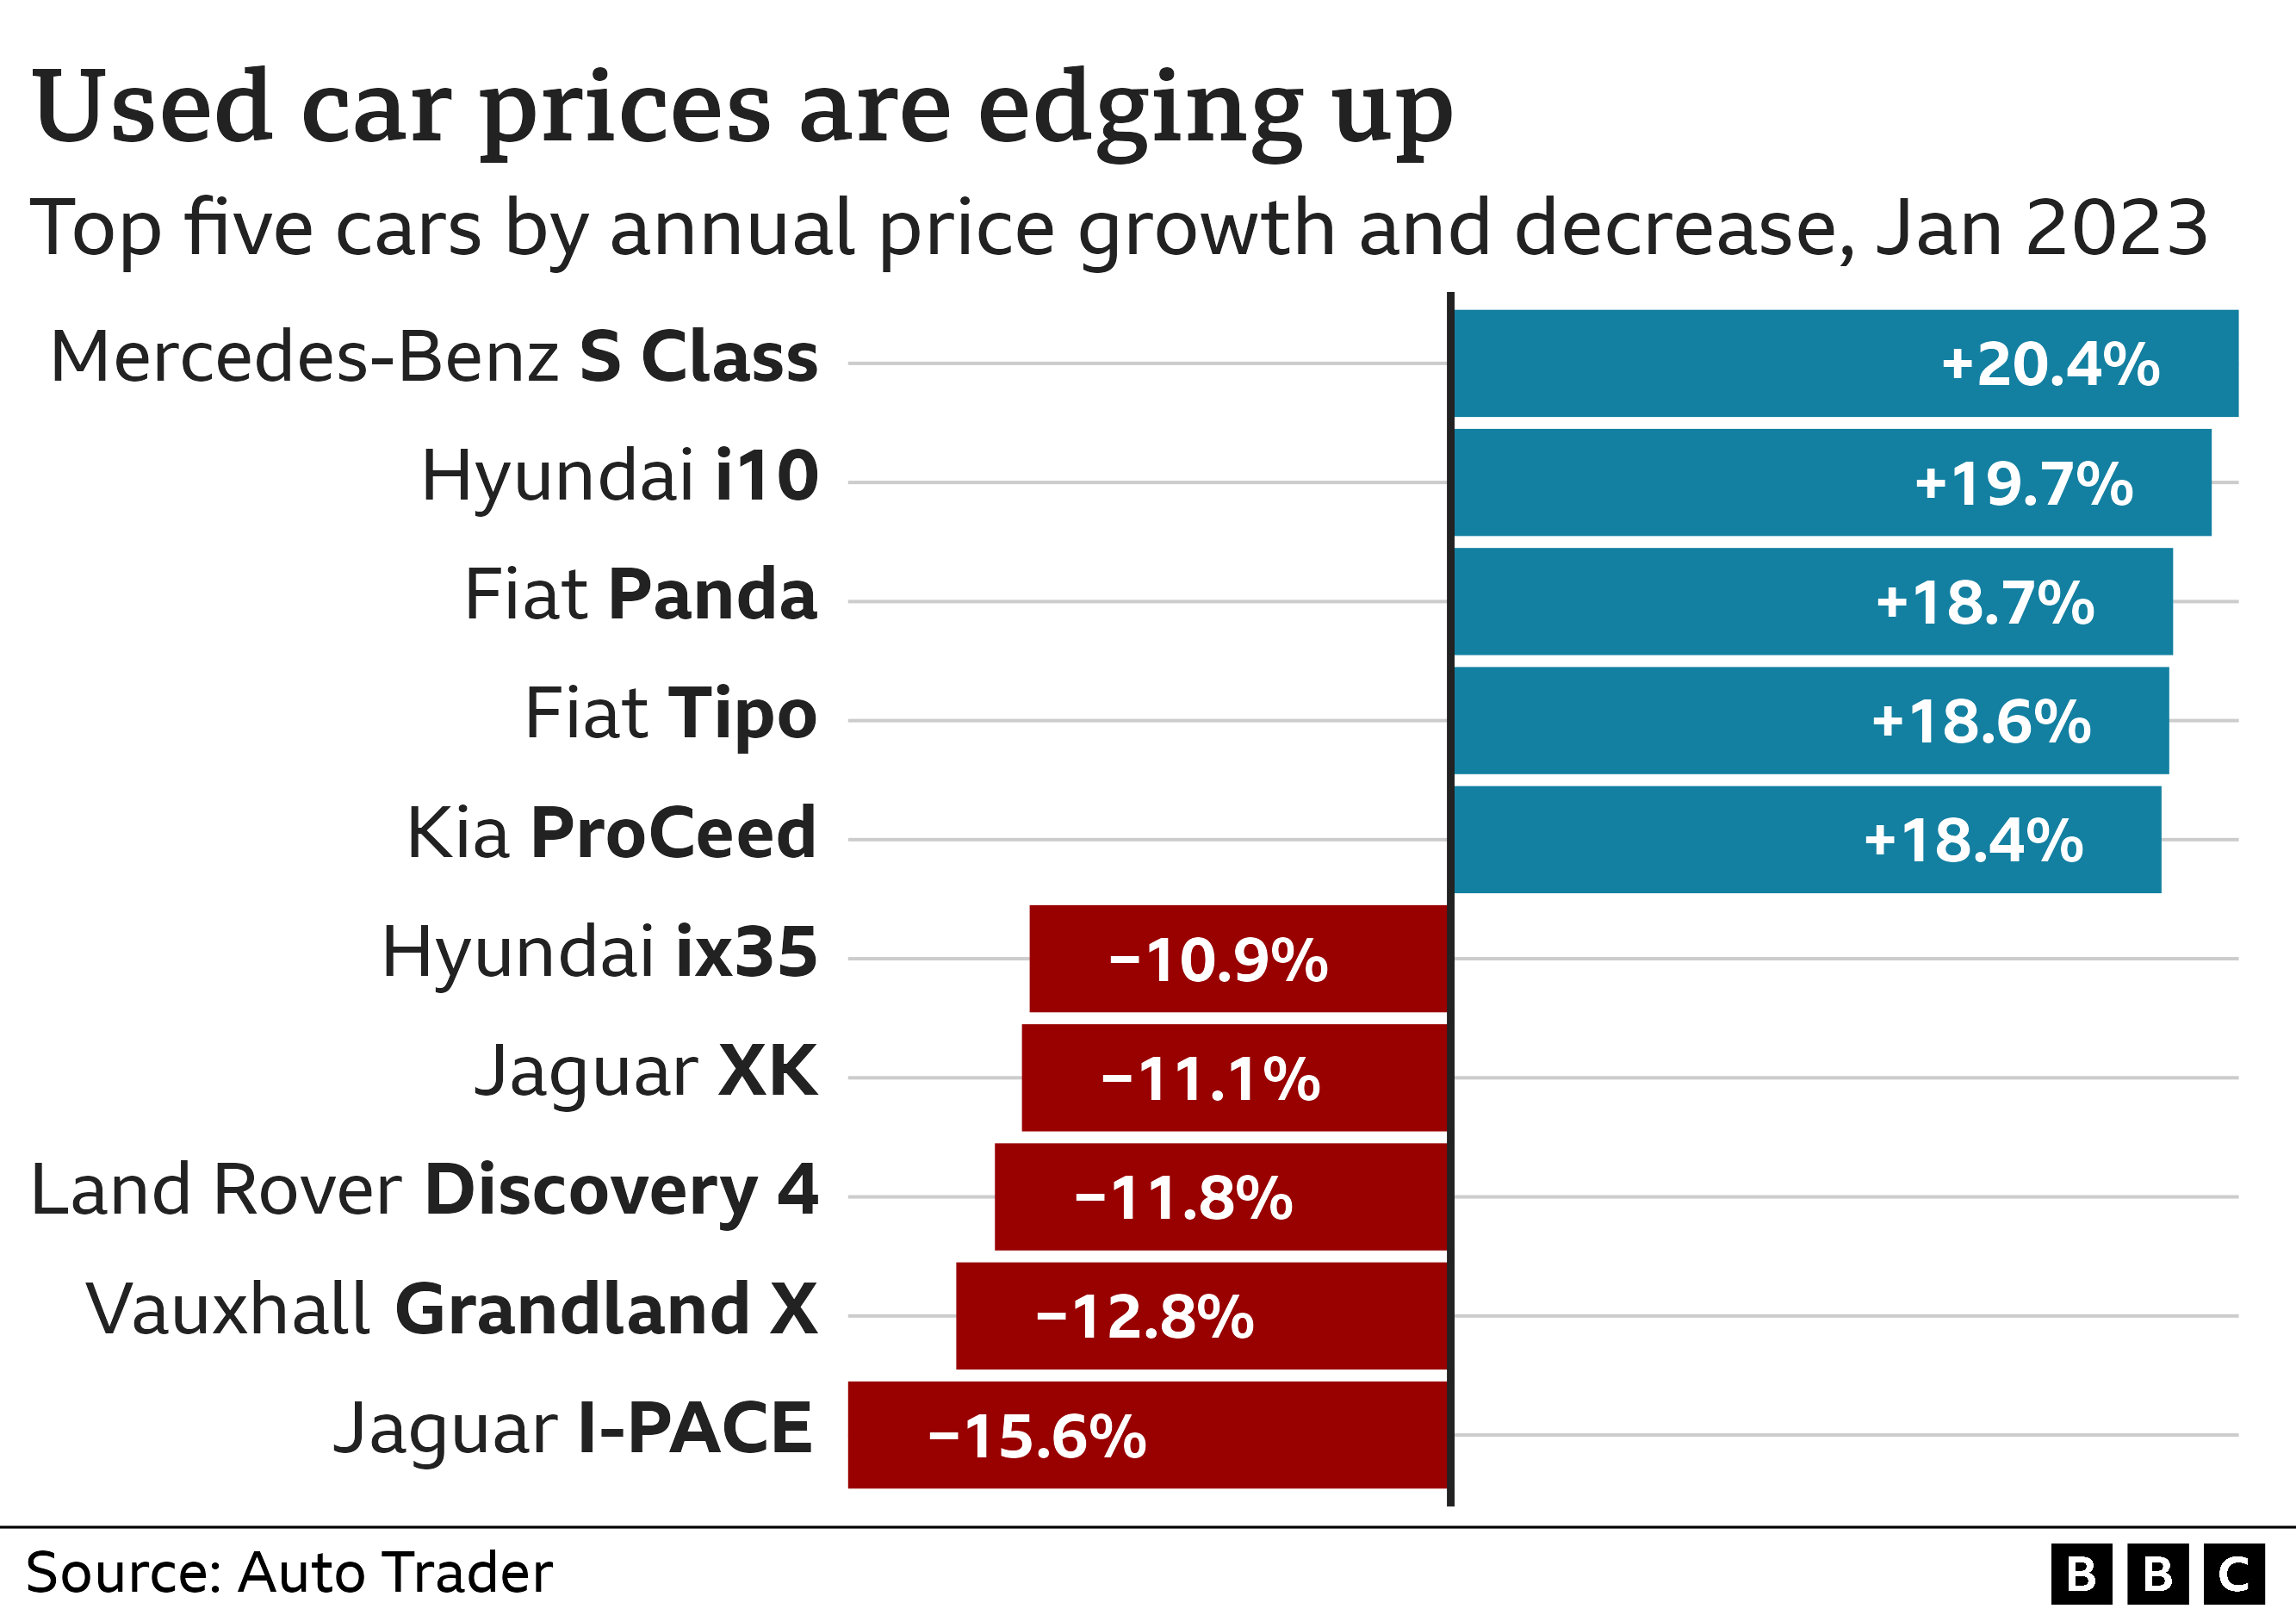 Гистограмма, показывающая годовое изменение цен на подержанные автомобили. Mercedes-Benz S-класса показал наибольший рост на 20,4%, а автомобили Jaguar I-PACE стали дешевле на 15,6%.